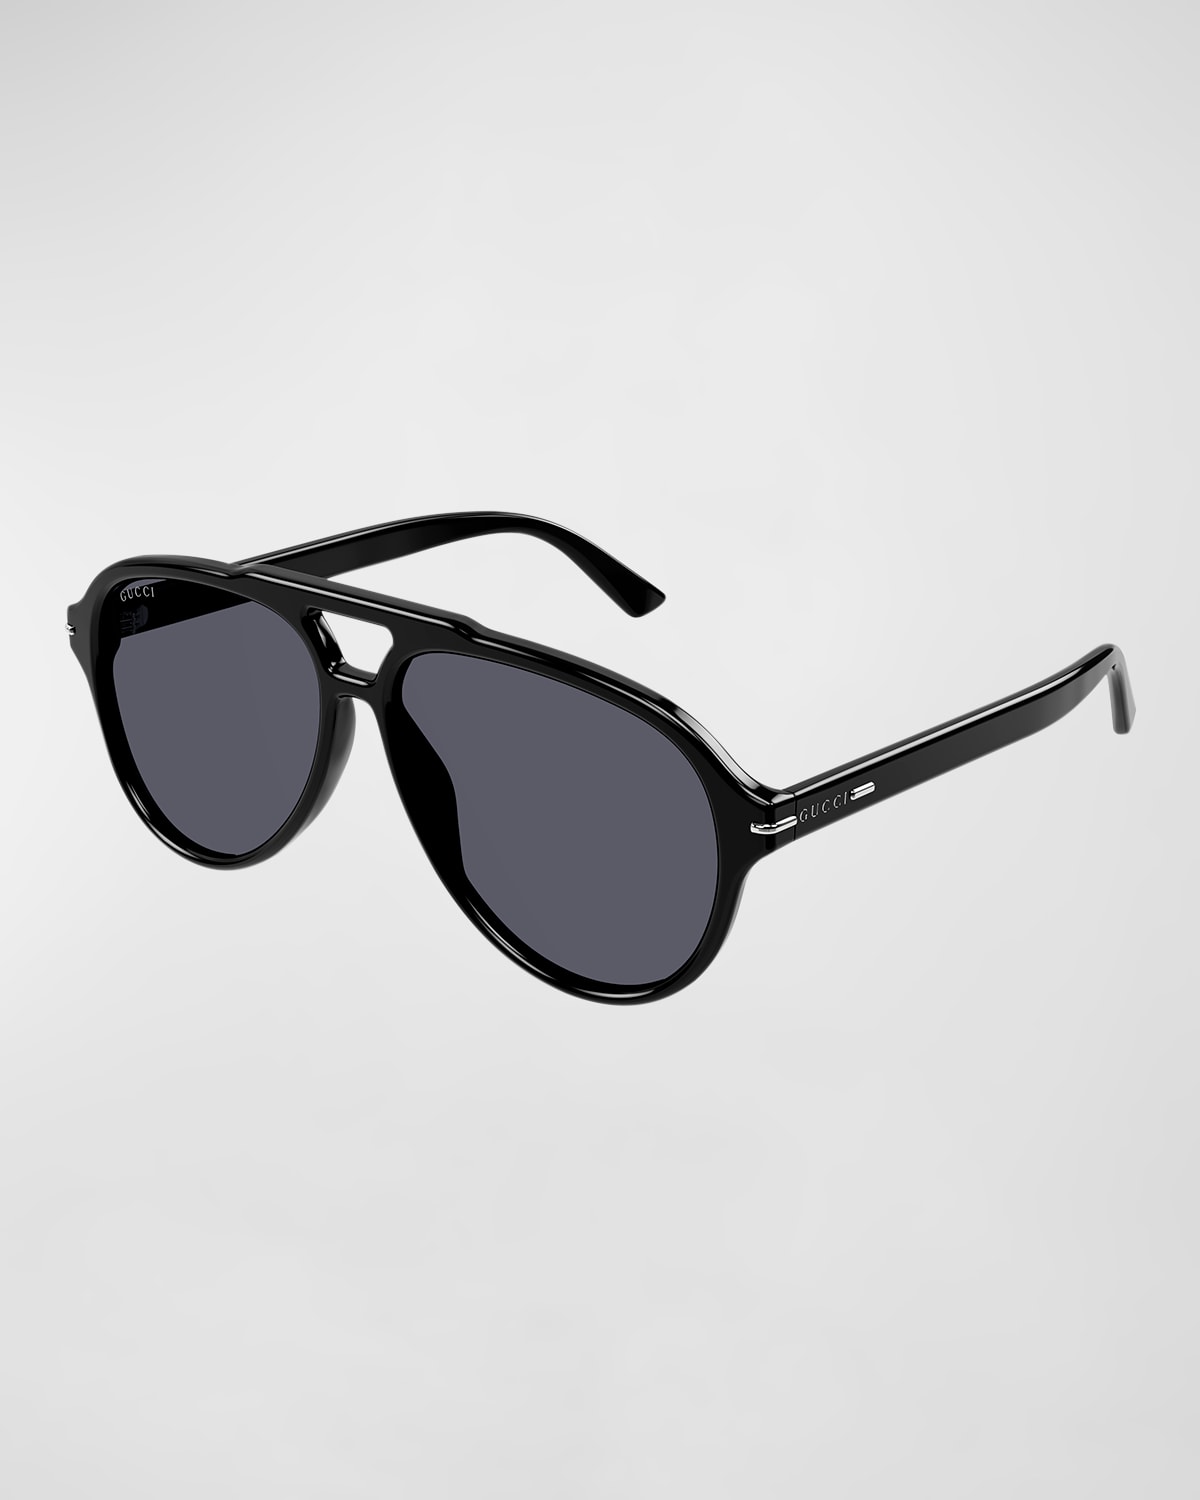 Men's GG1443Sm Acetate Aviator Sunglasses